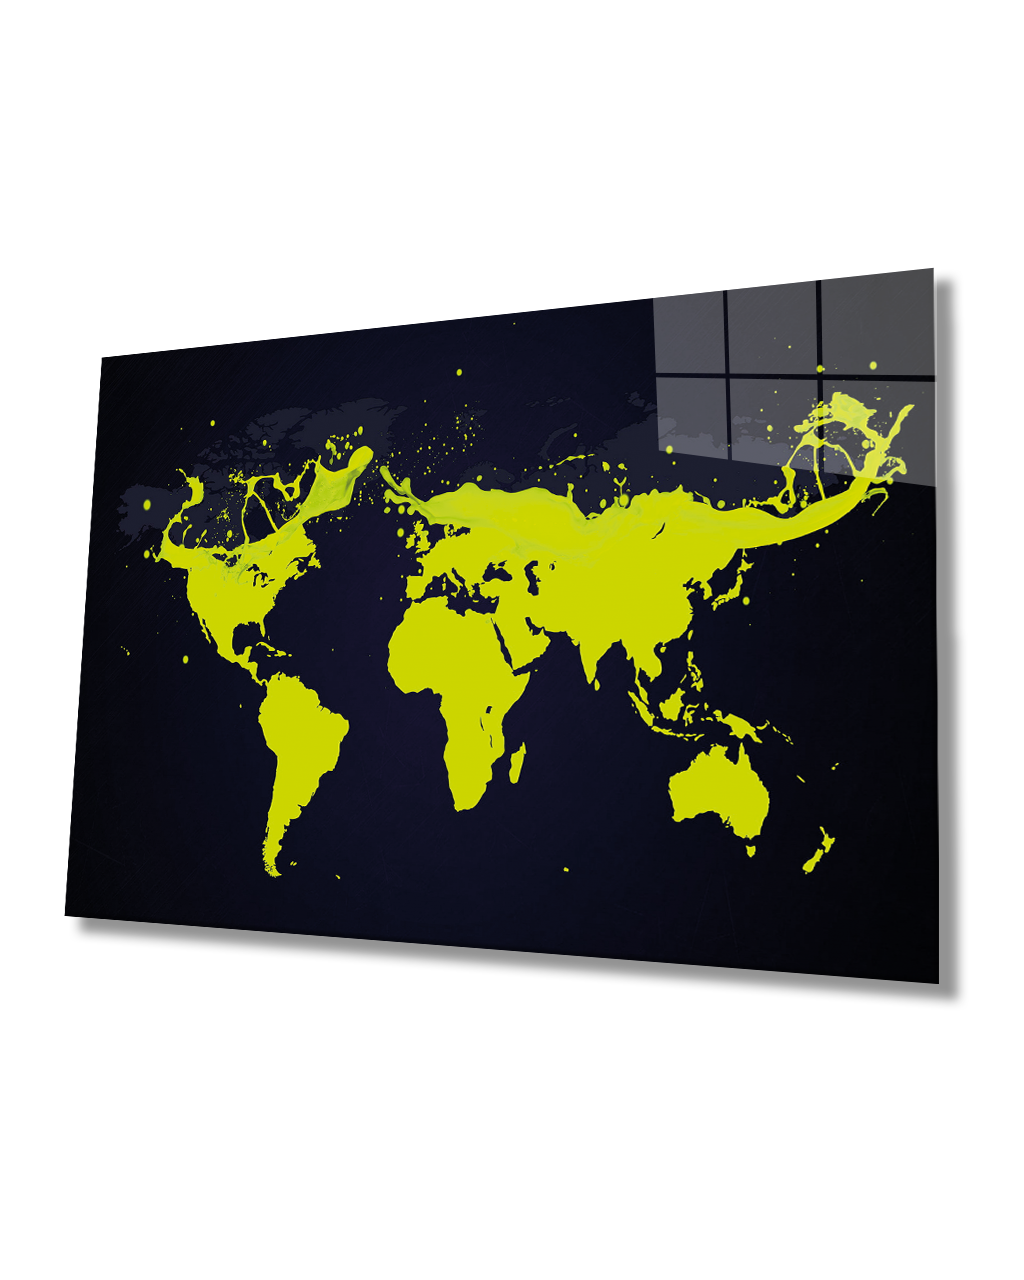 Yeşil Boya Dünya Haritası 4mm Dayanıklı Cam Tablo Temperli Cam, Greed Color World Map